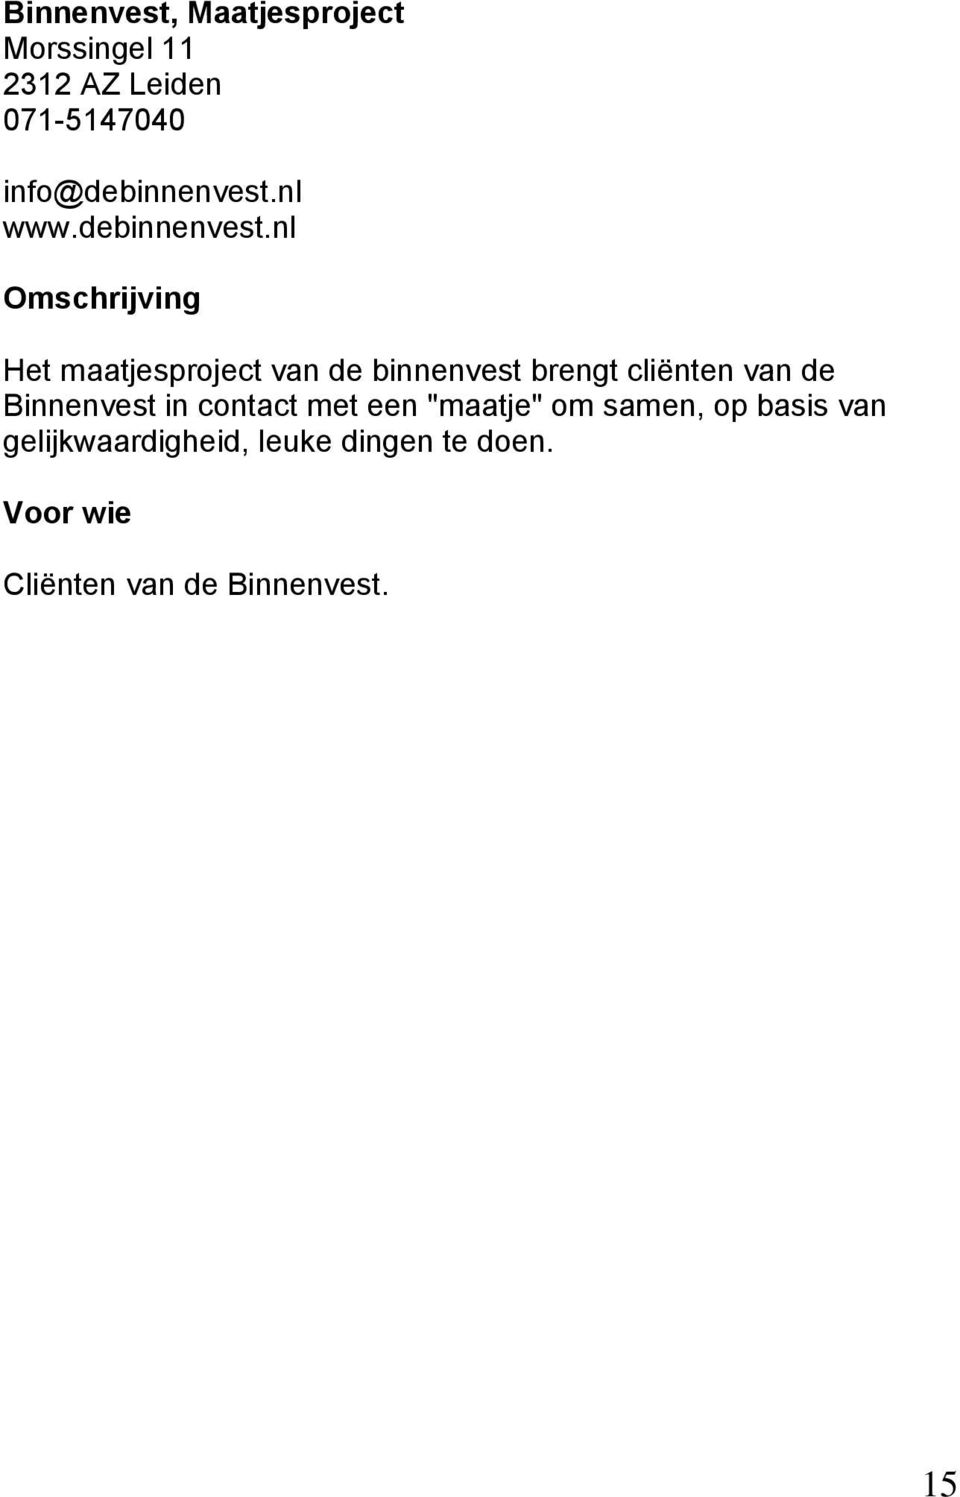 nl www.debinnenvest.